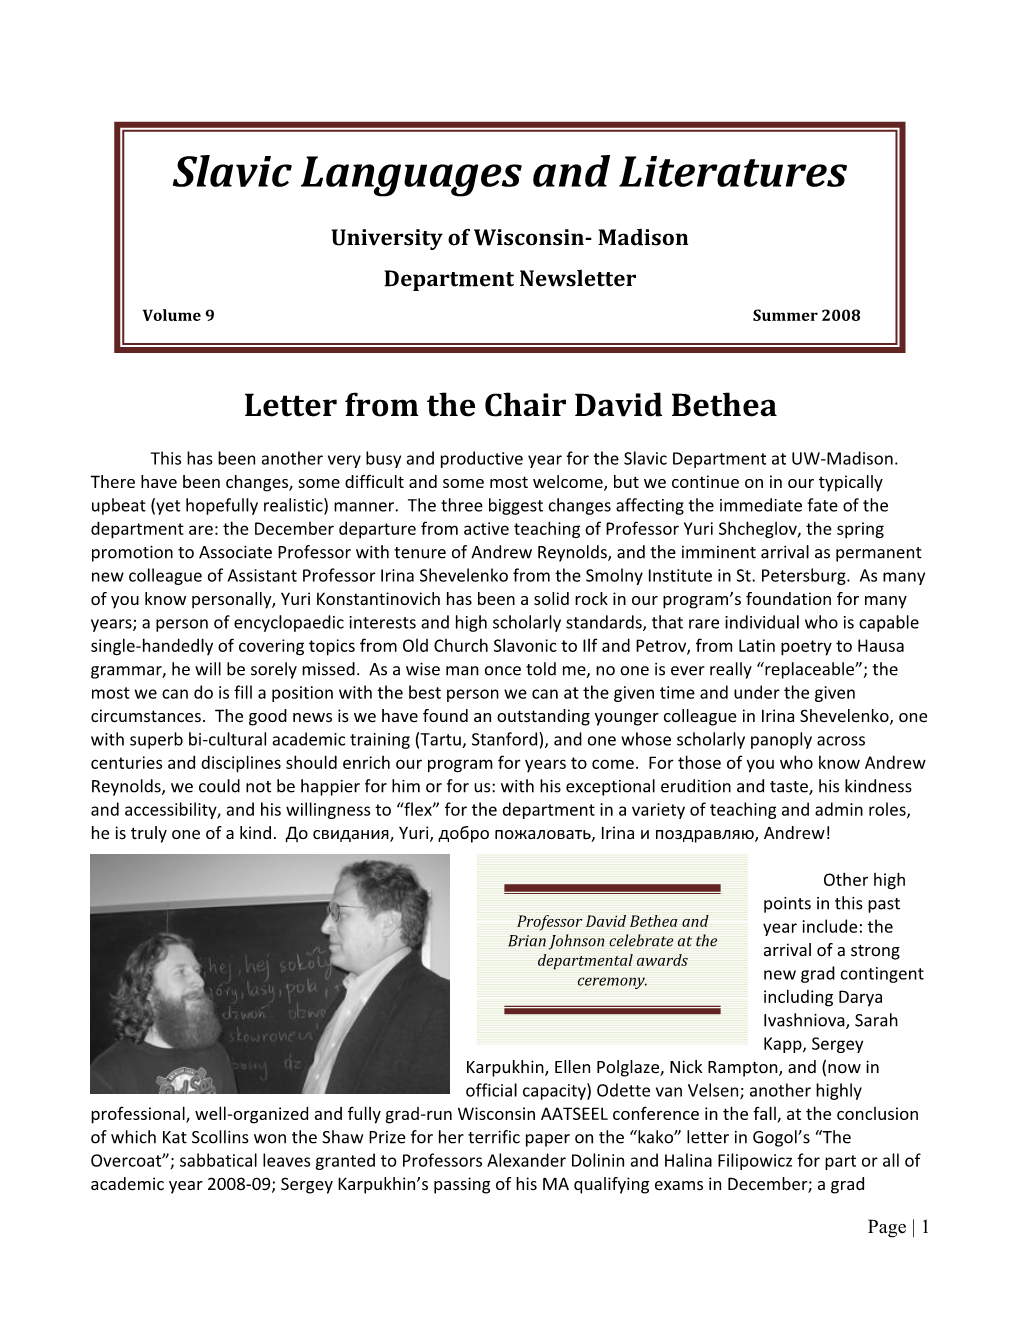 Slavic Newsletter 2008